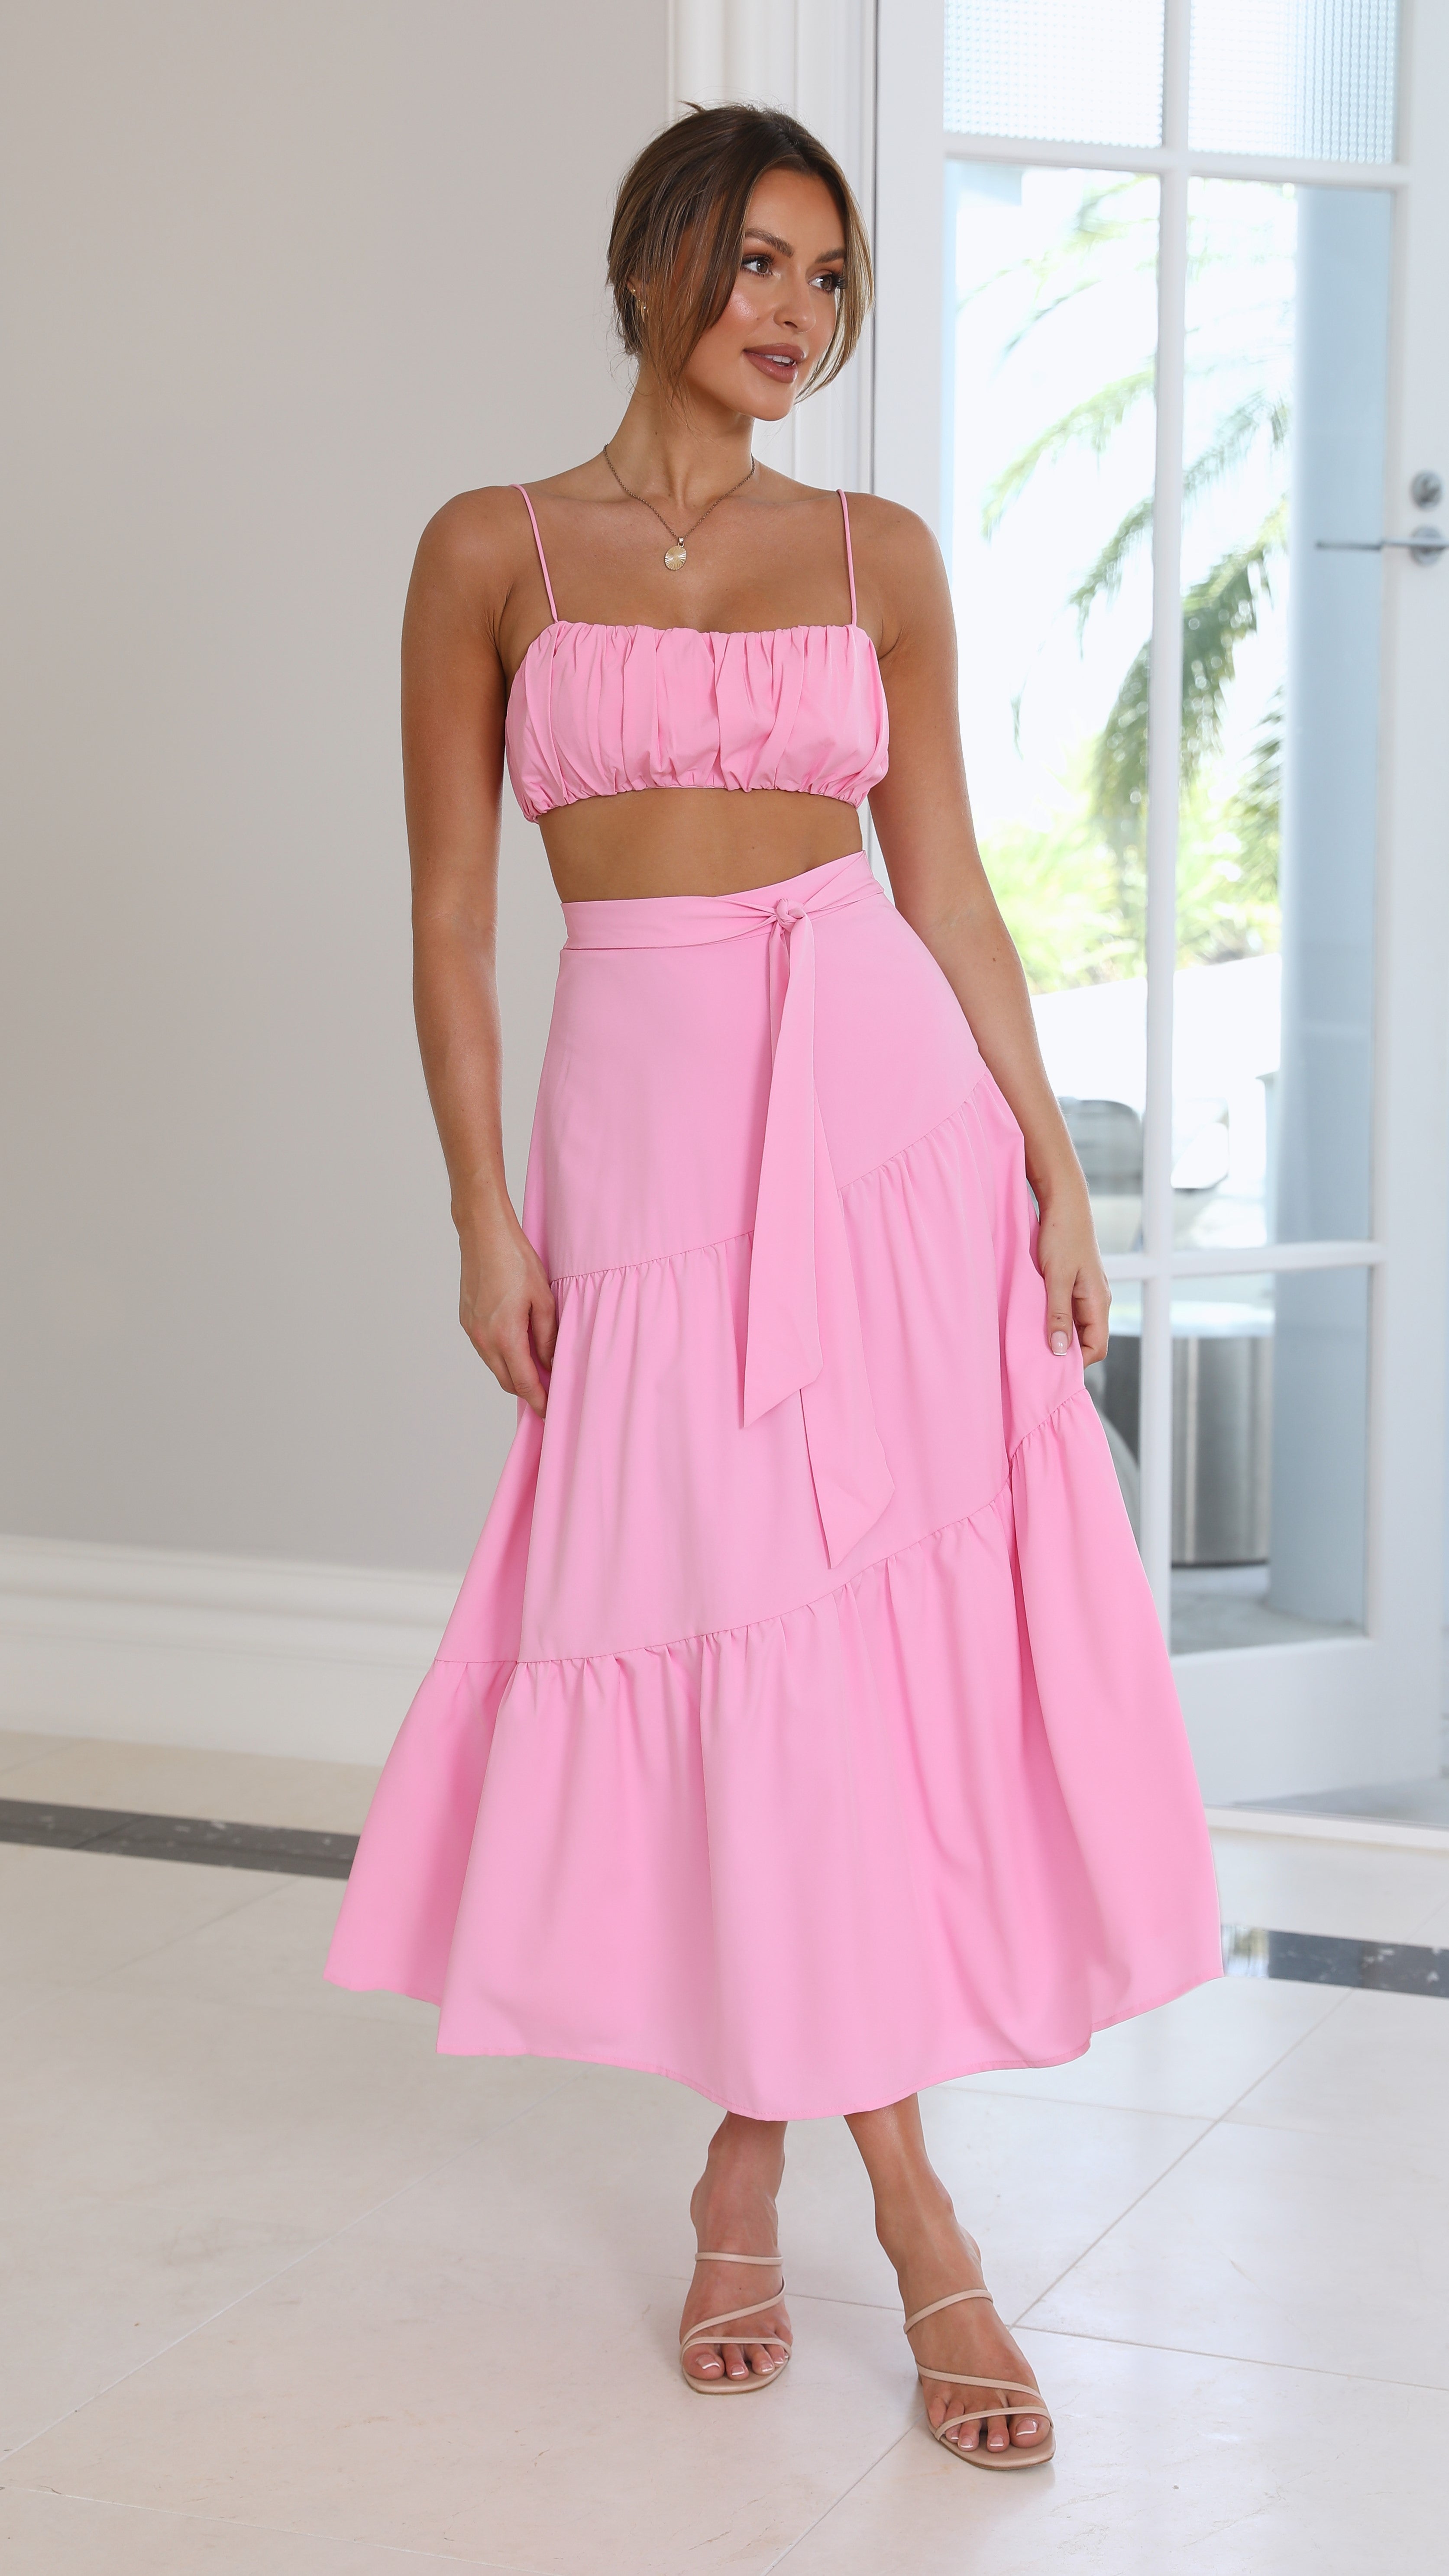 Saraya Top and Skirt Set - Pink - Billy J